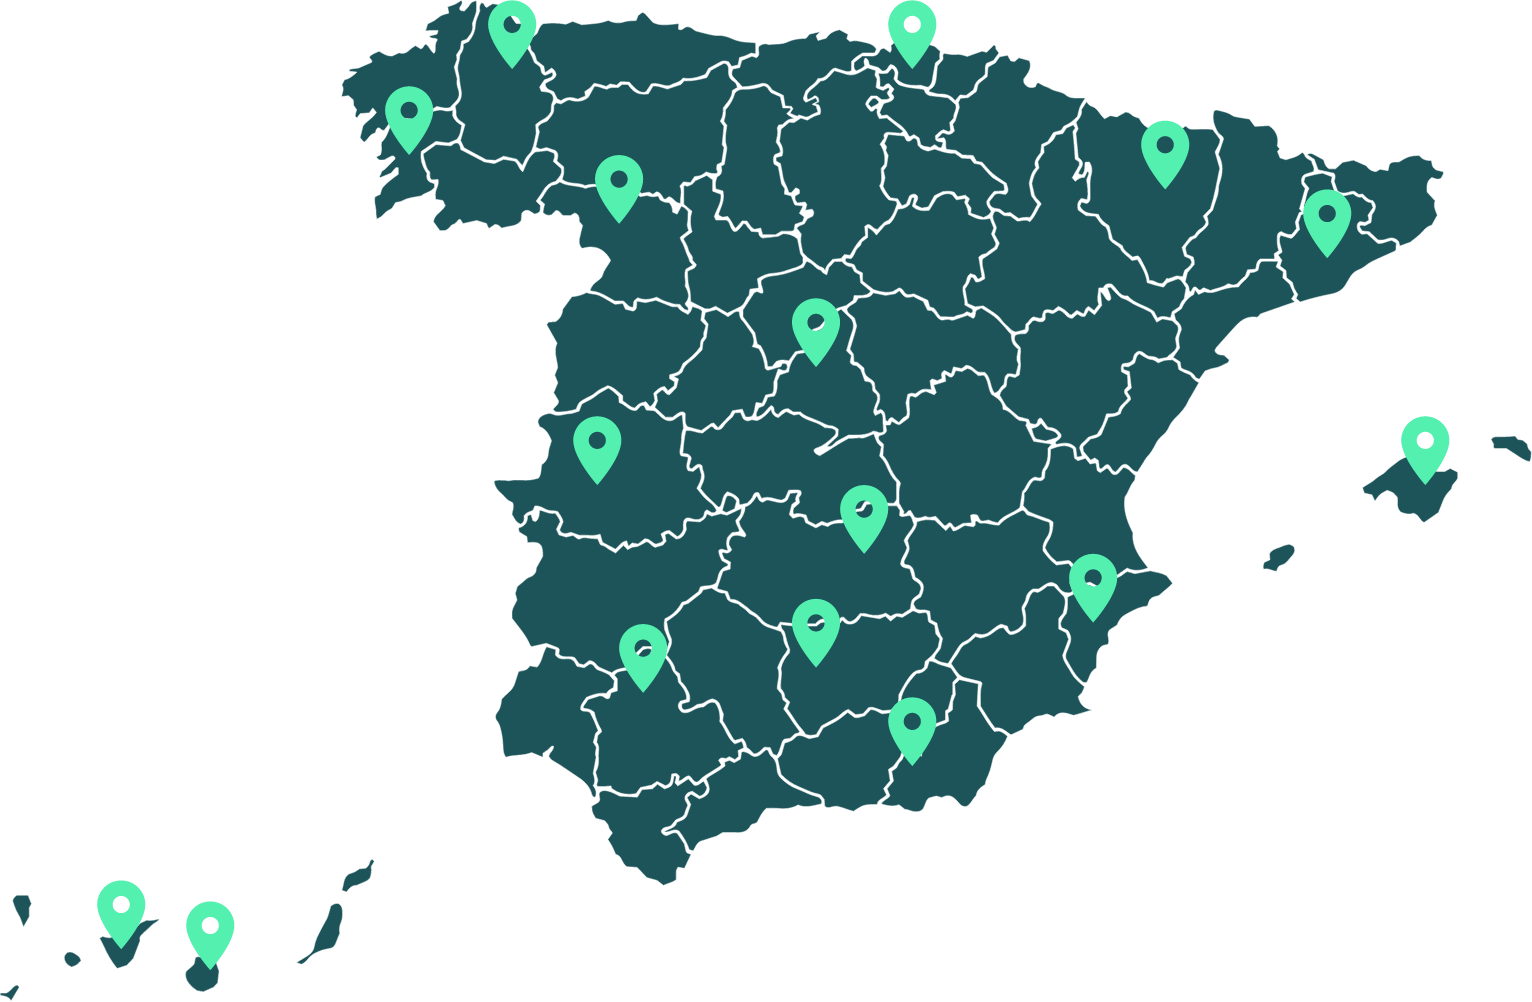 Presence in Spain